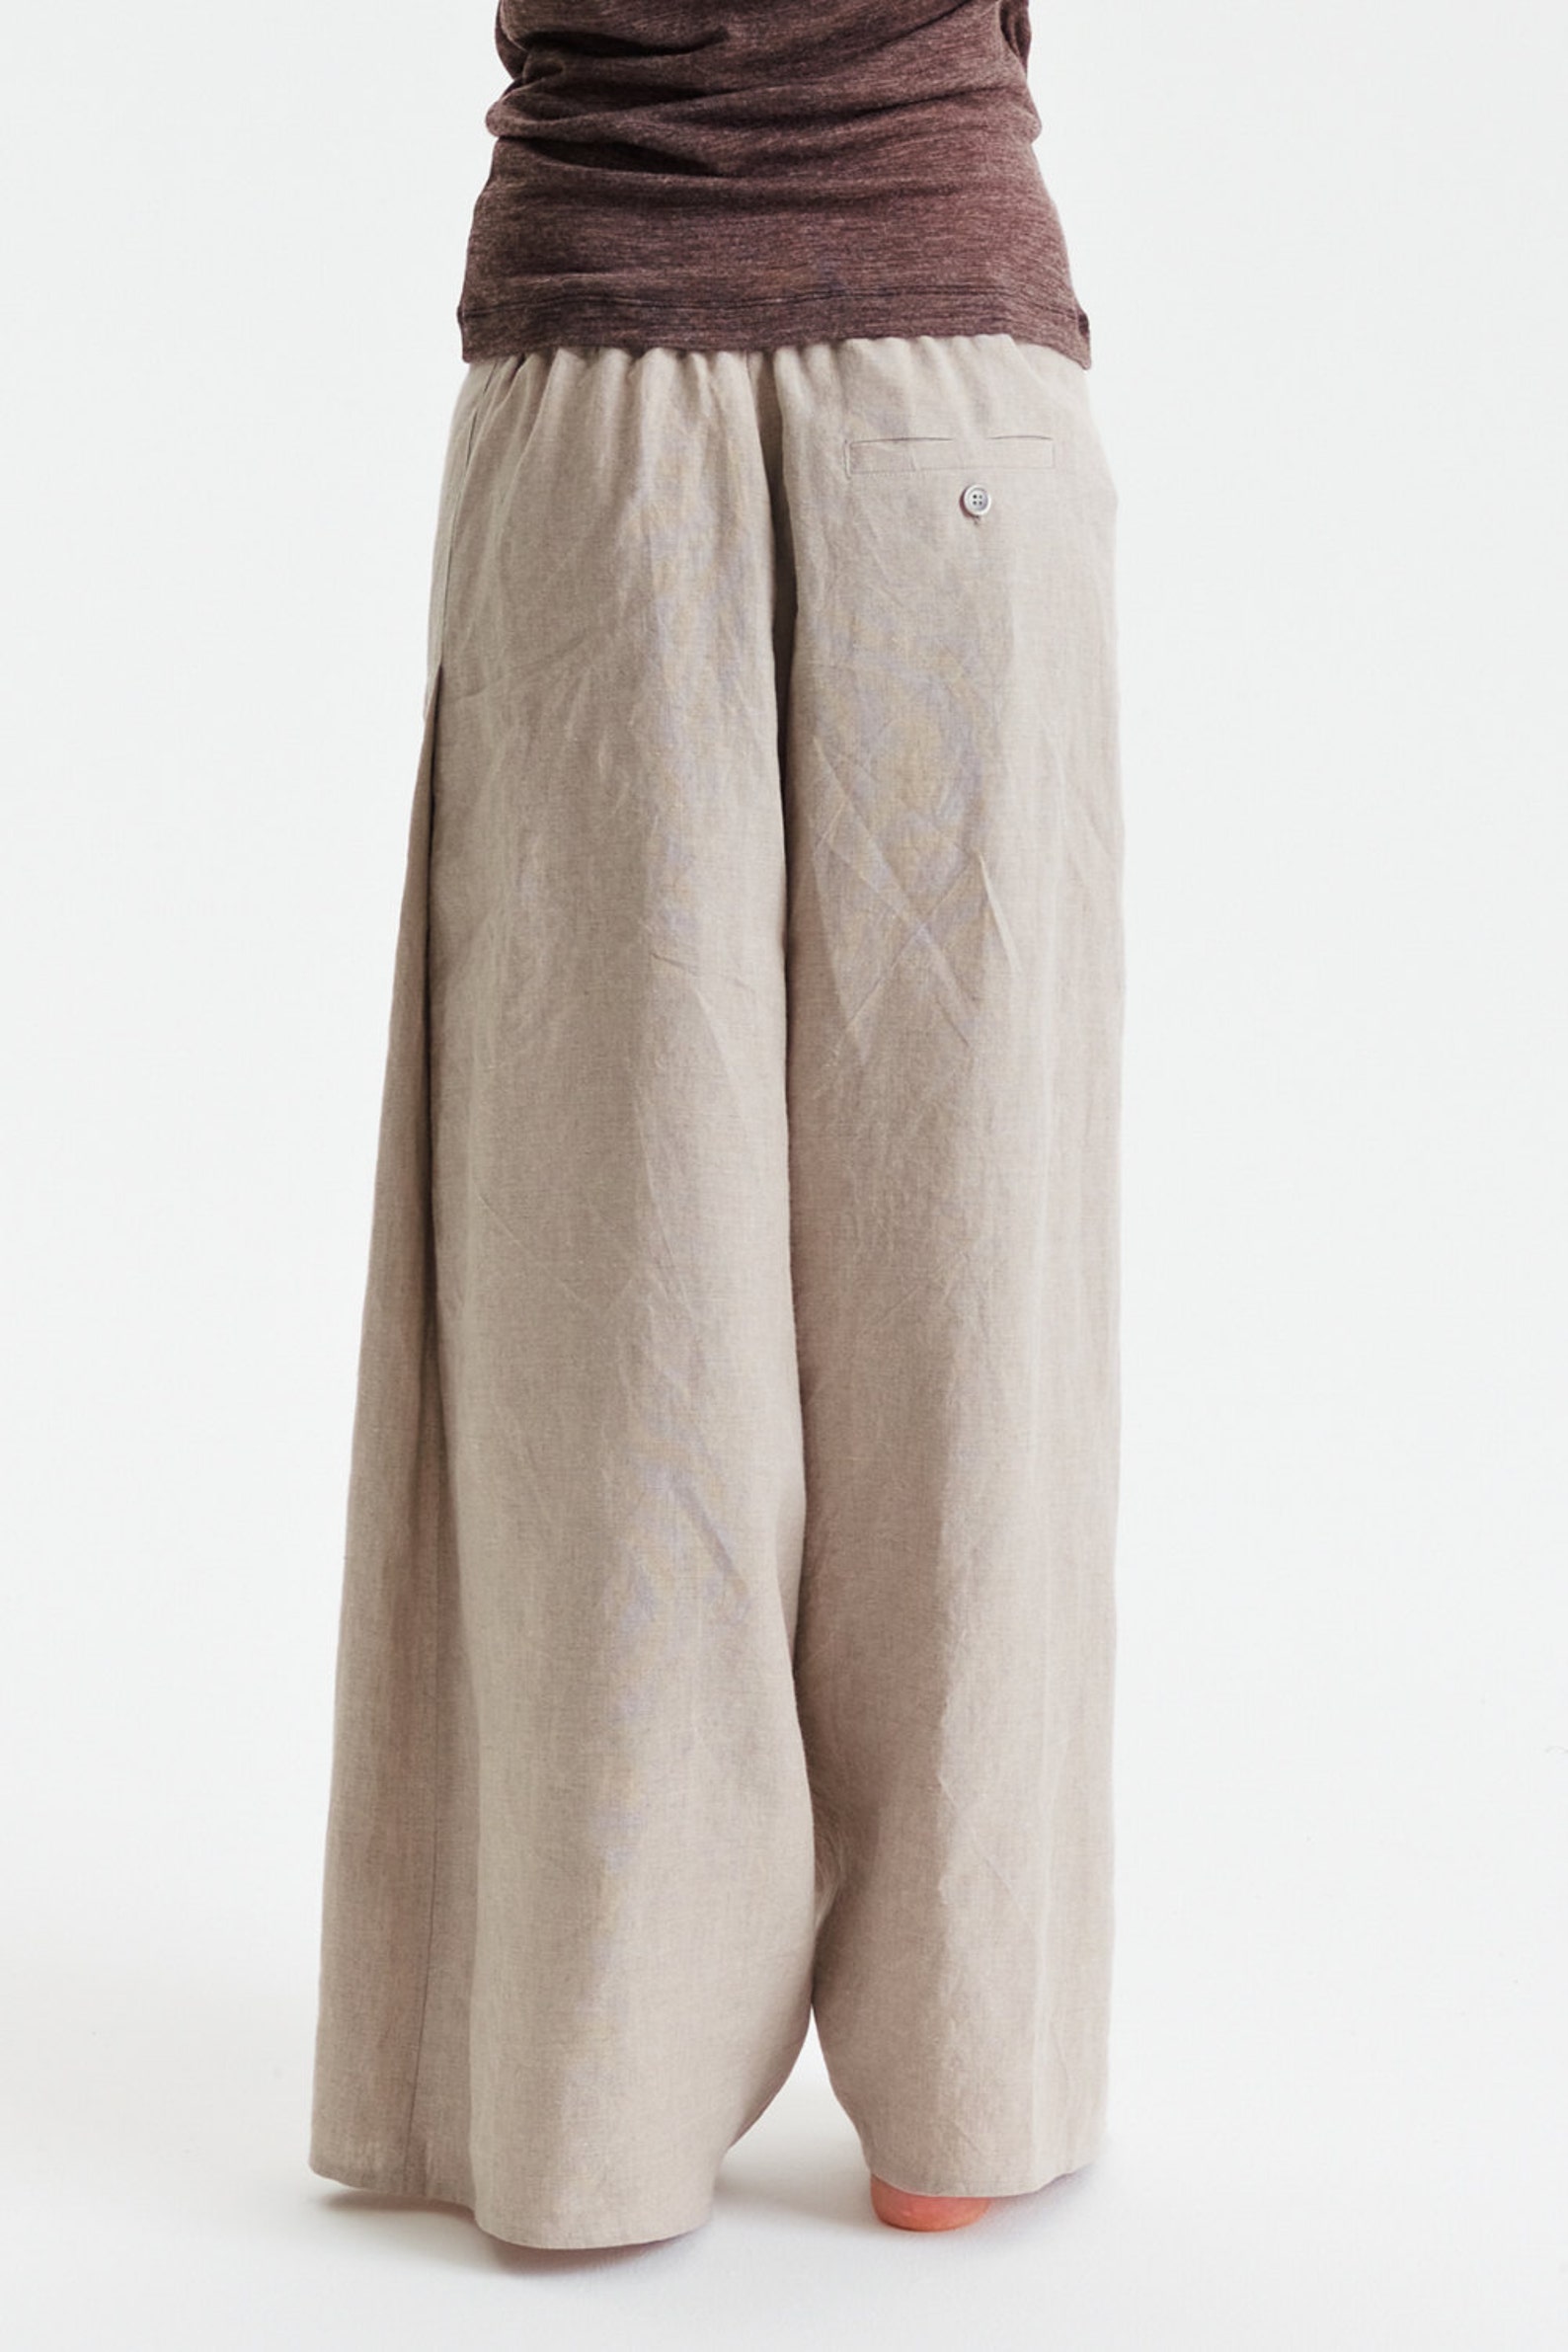 Beige Linen Pants/ Extravagant Drop Crotch Beige Pants/ - Etsy